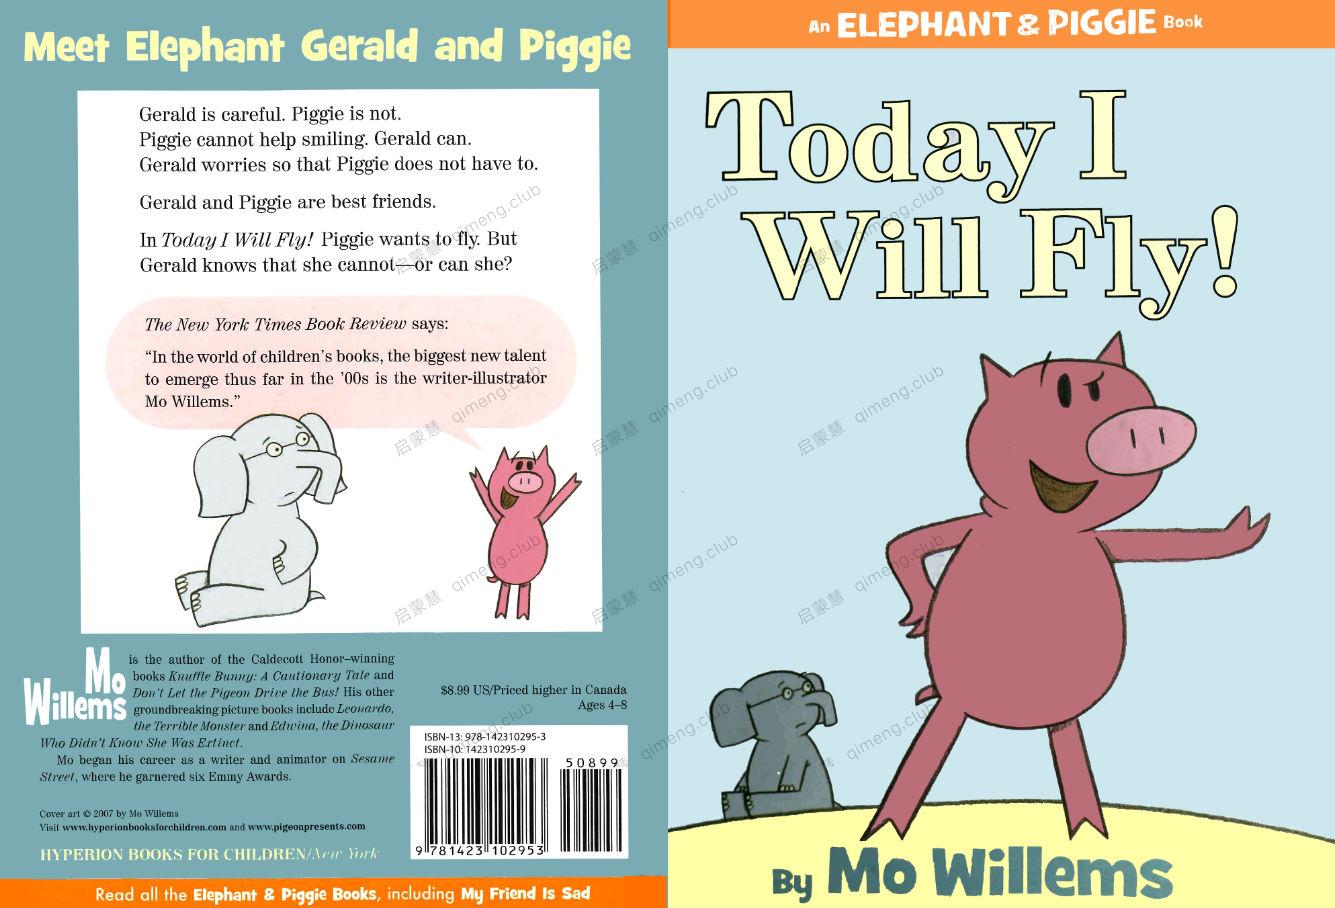 全世界孩子都爱不释手的情商启蒙类绘本 小猪小象《An Elephant and Piggie Book》童年友情系列全套资源 25册绘本+音频+外教视频